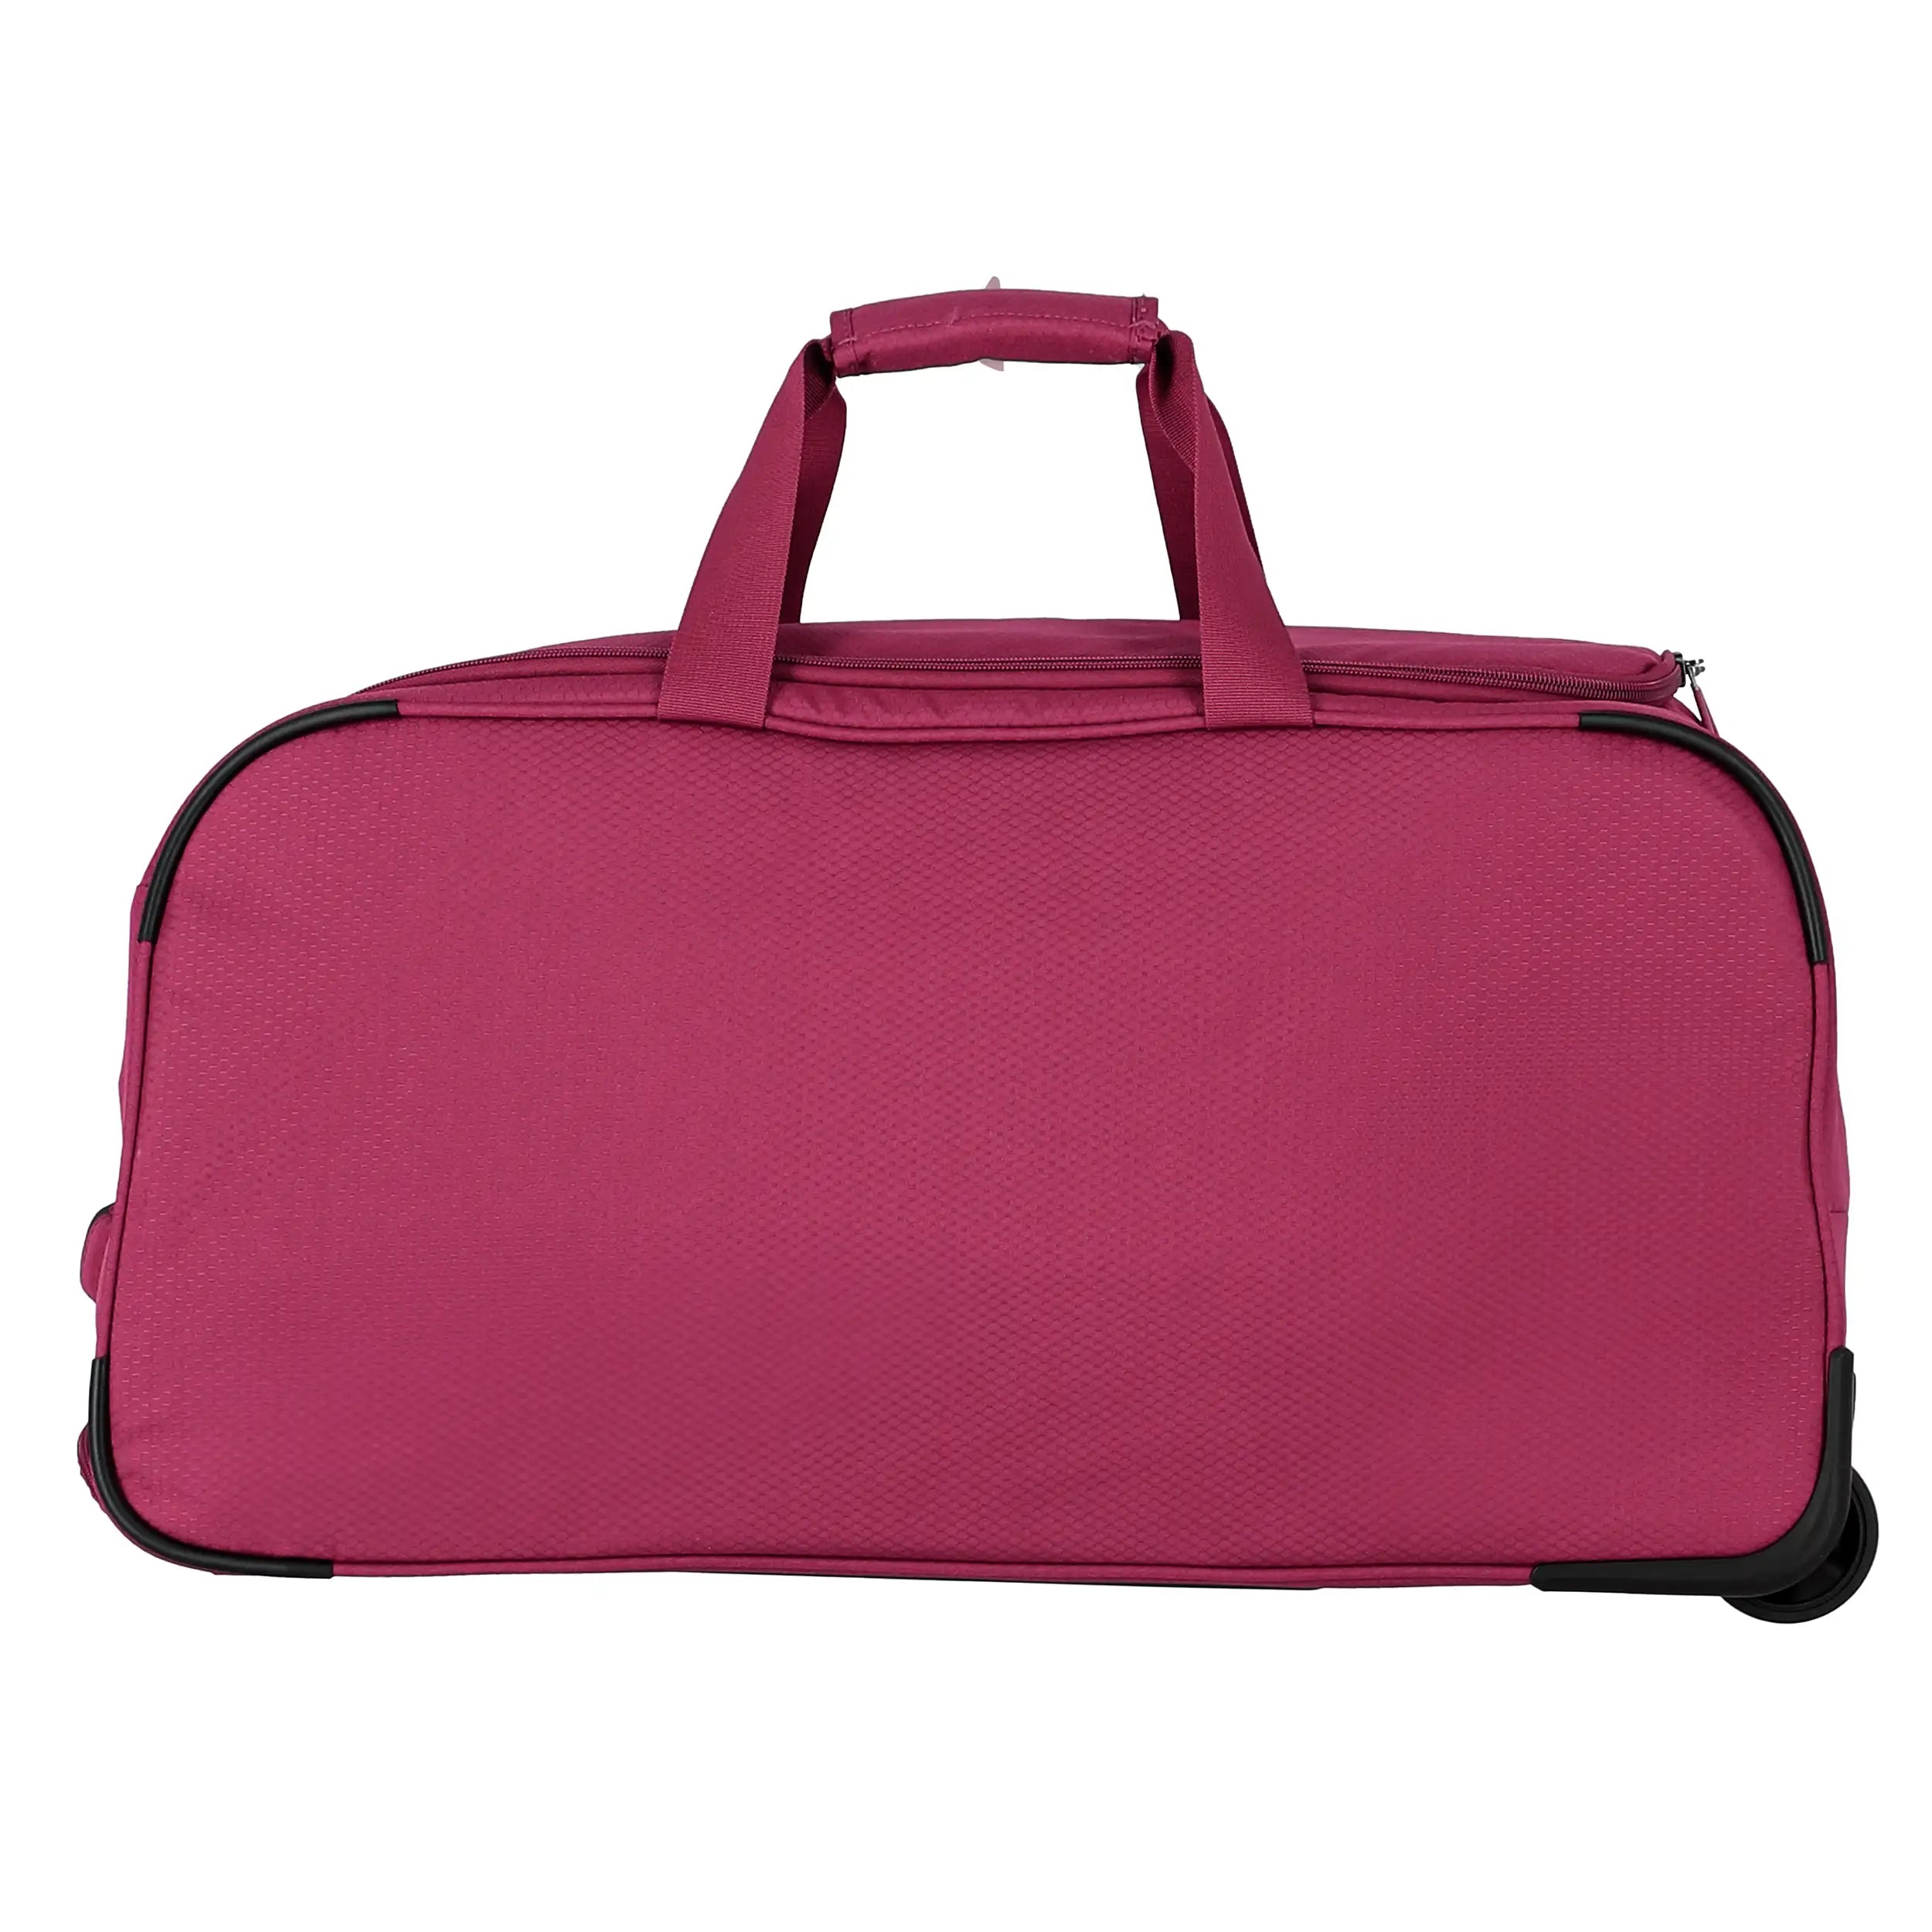 Travelite Skaii roller travel bag 65 cm - evening red